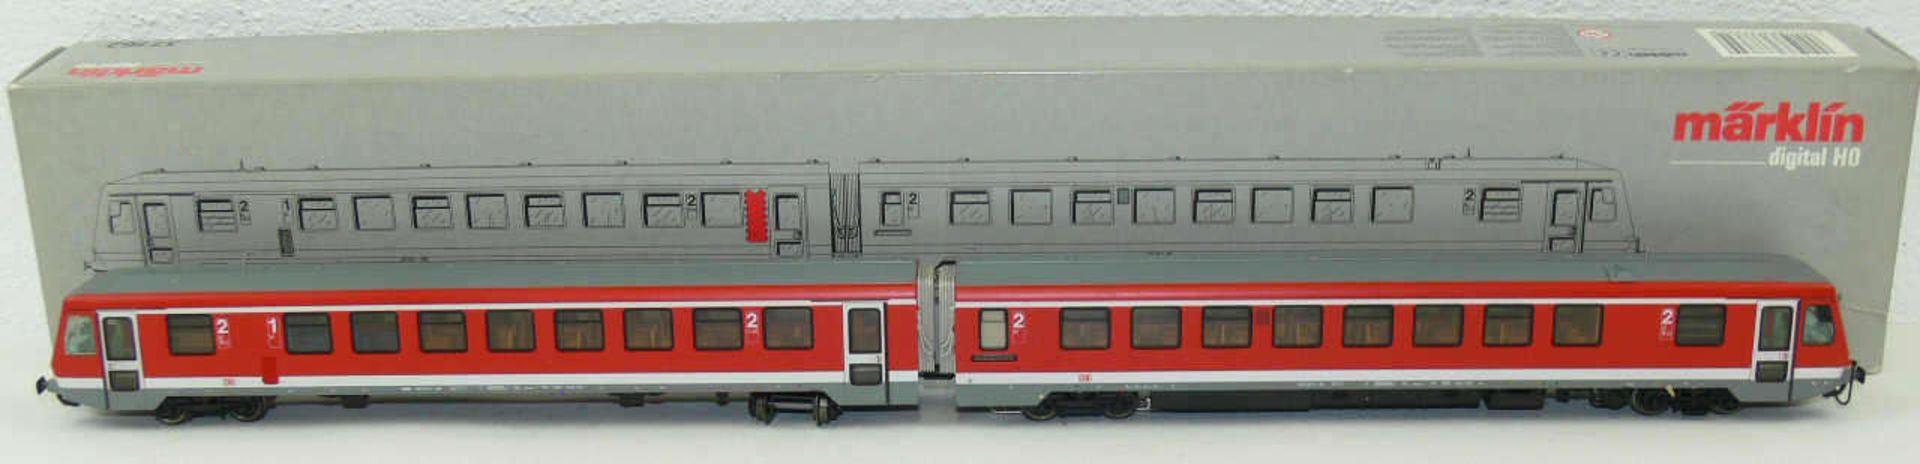 Märklin 37762, Diesel - Triebwagenzug BR 628.2. Digital. Neuwertiger Zustand mit Probe Laufspuren.